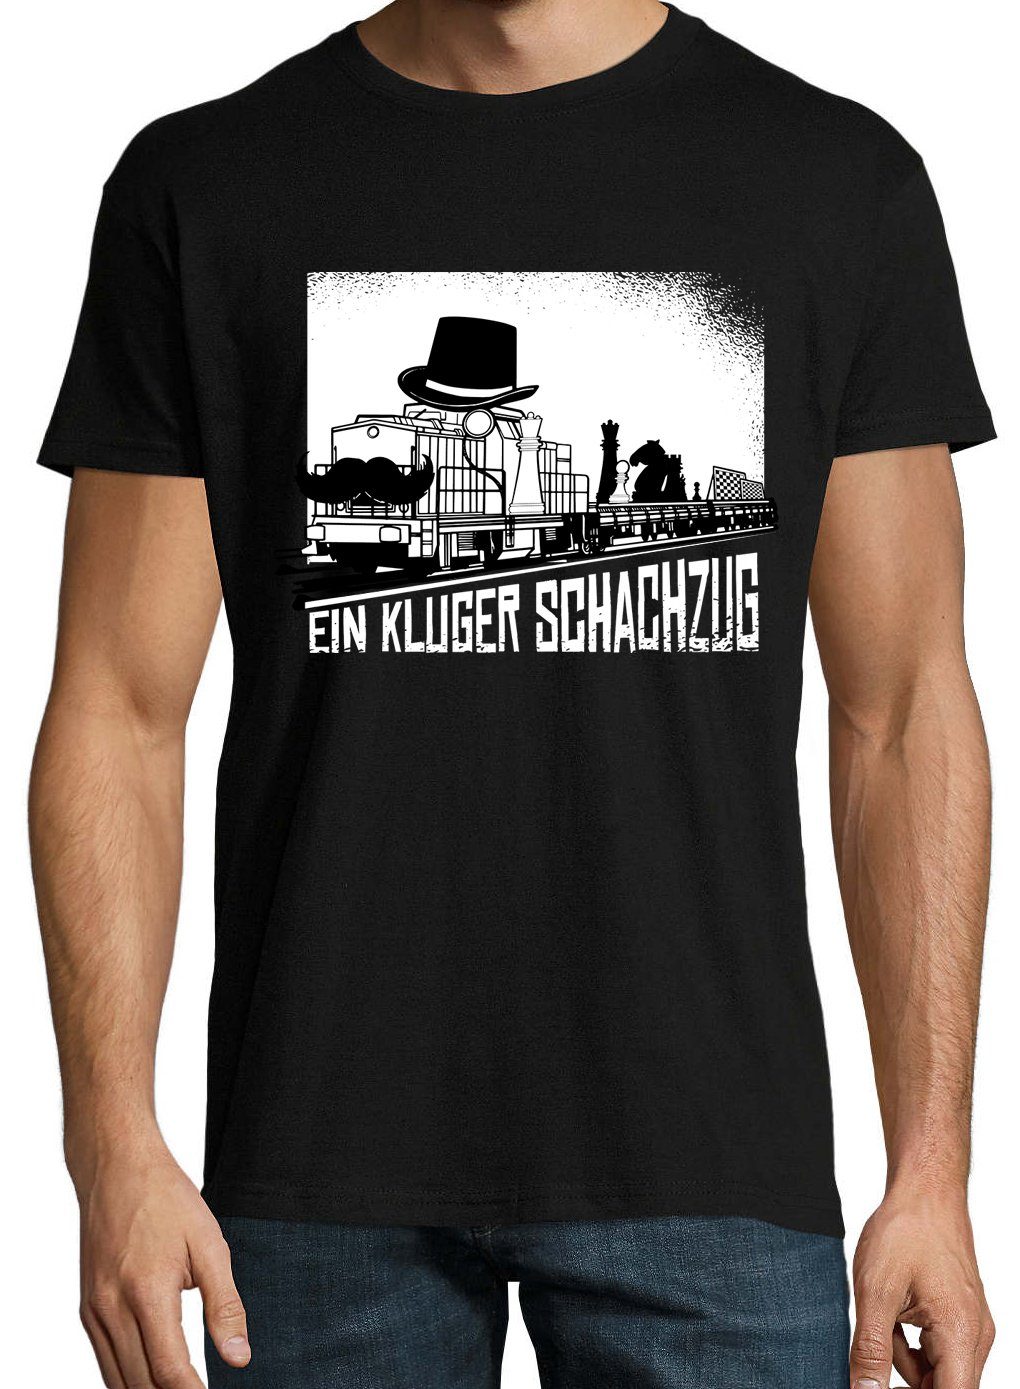 Ein Herren Schwarz trendigem Shirt Designz mit Schachzug Frontprint Youth Kluger T-Shirt